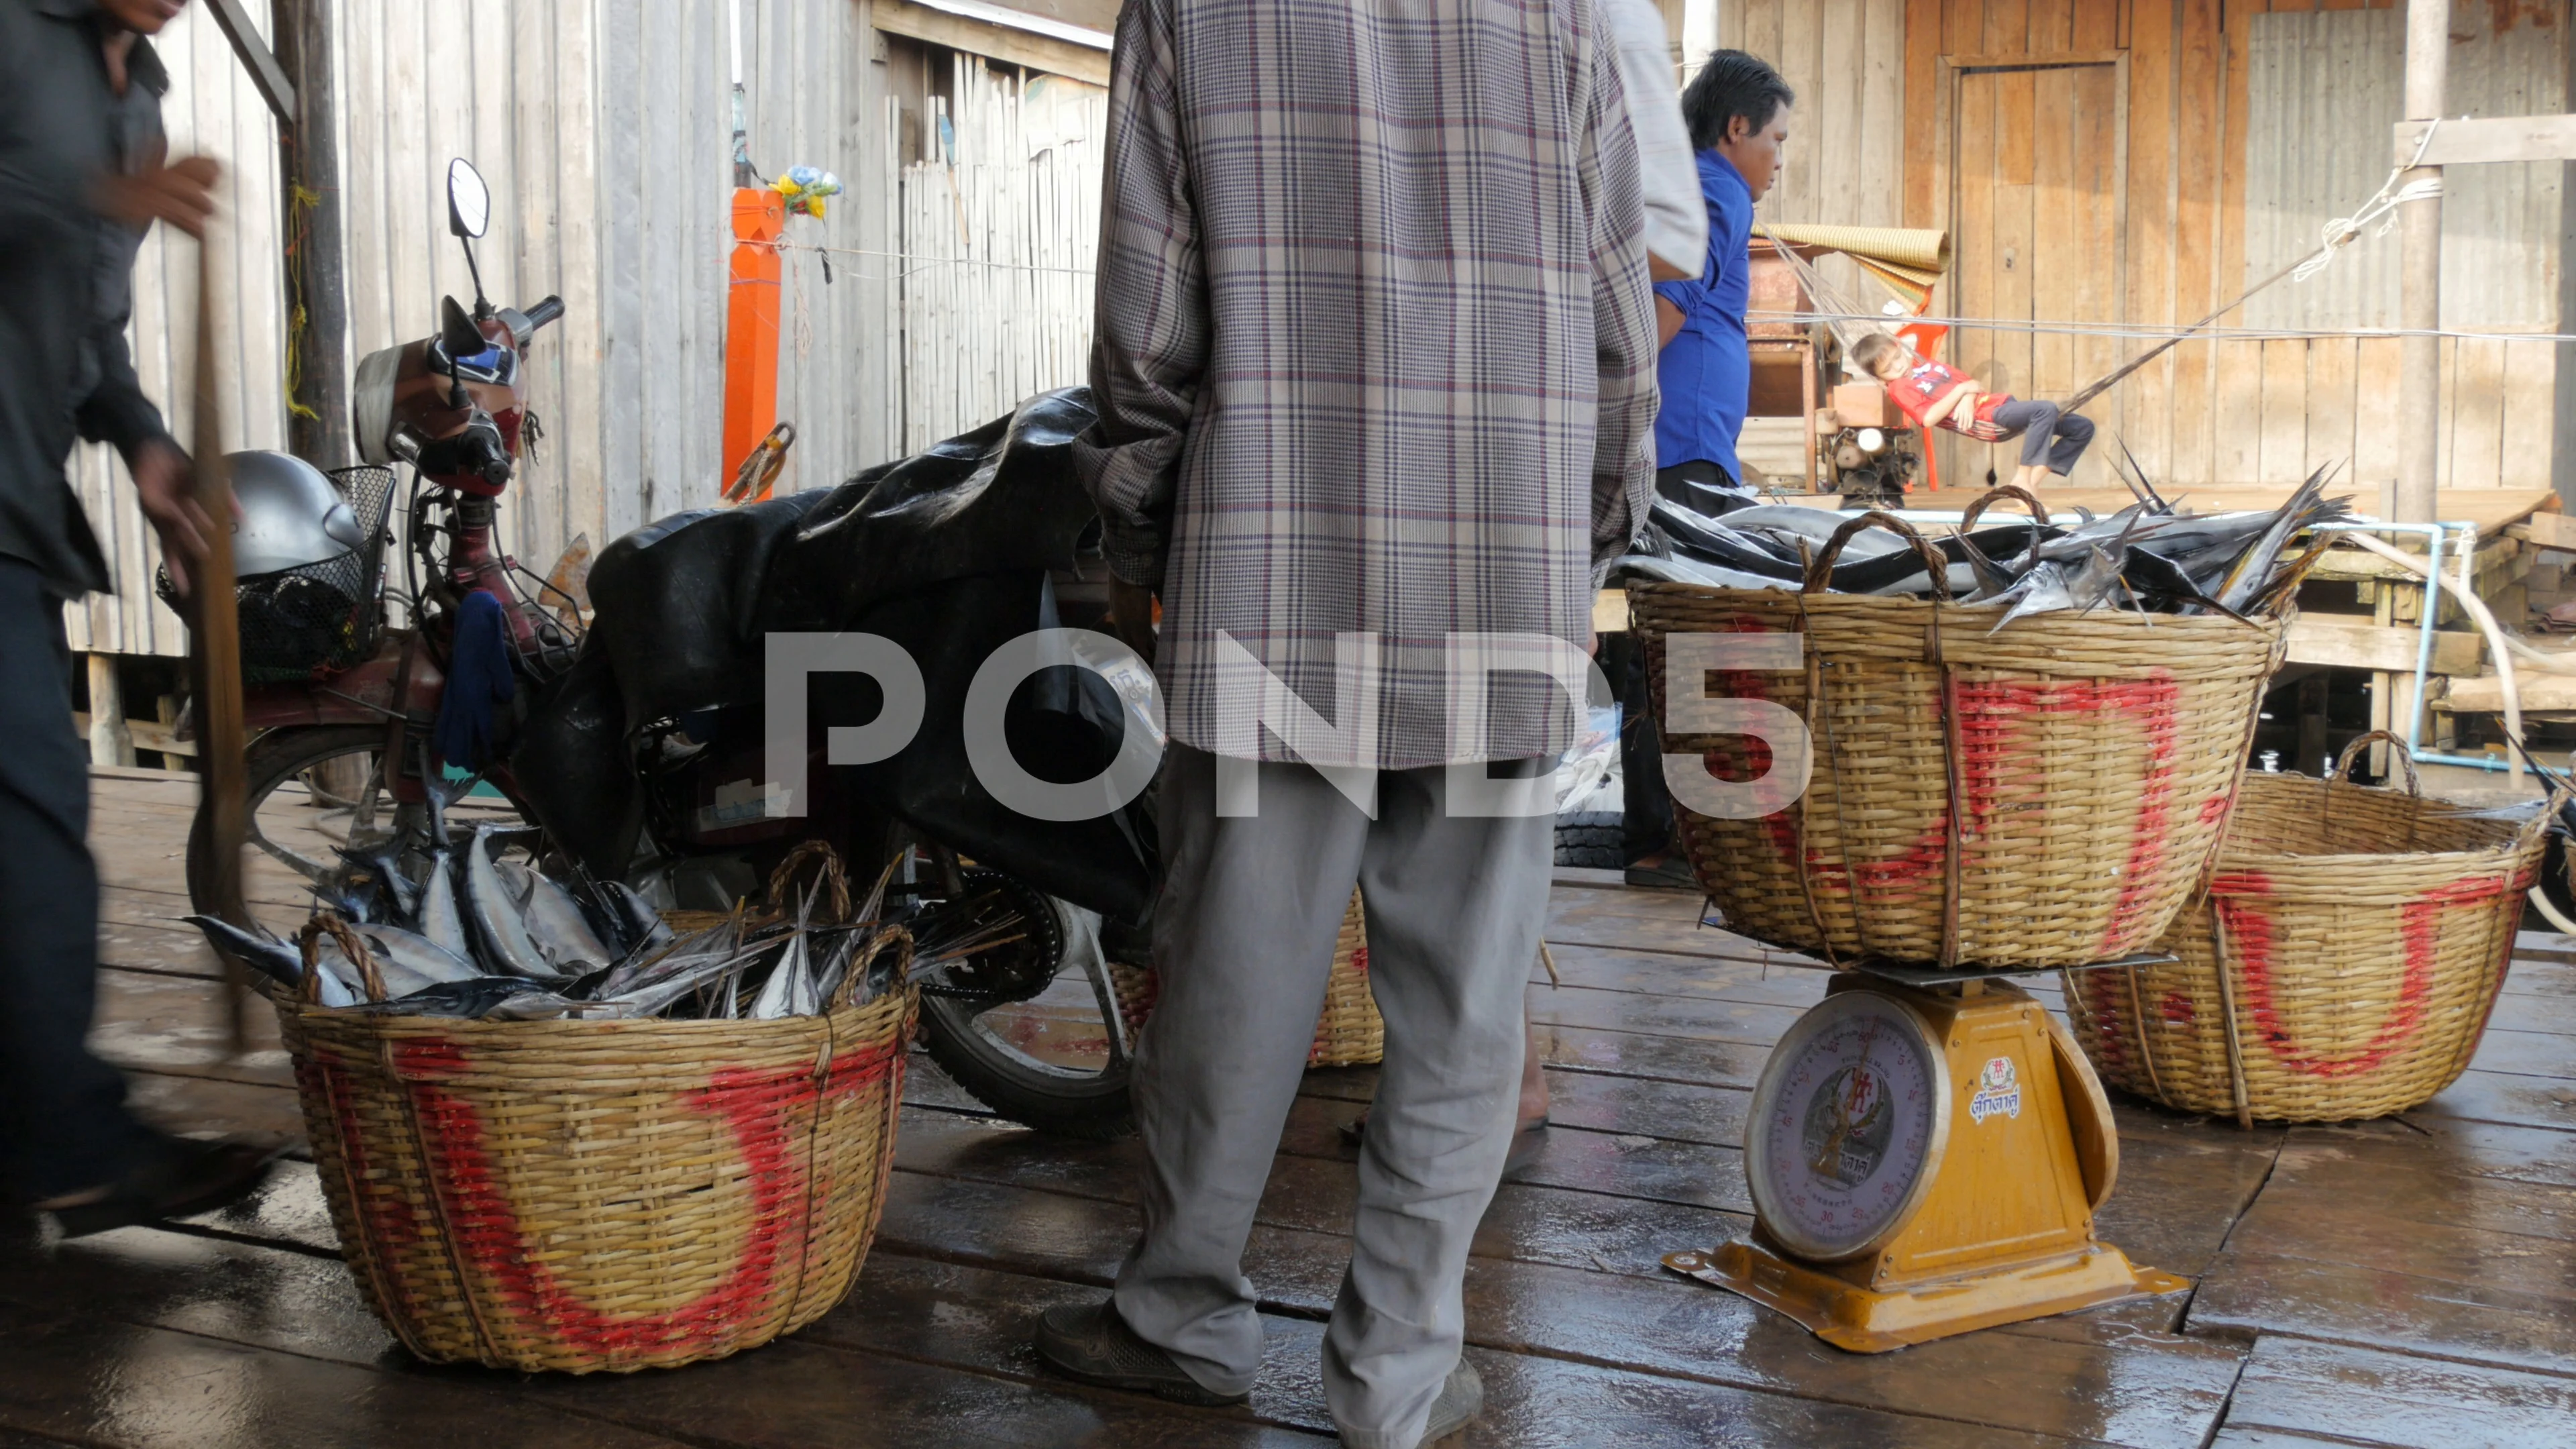 https://images.pond5.com/men-loading-baskets-fish-motorcyclesihanoukvillecambodia-077802521_prevstill.jpeg